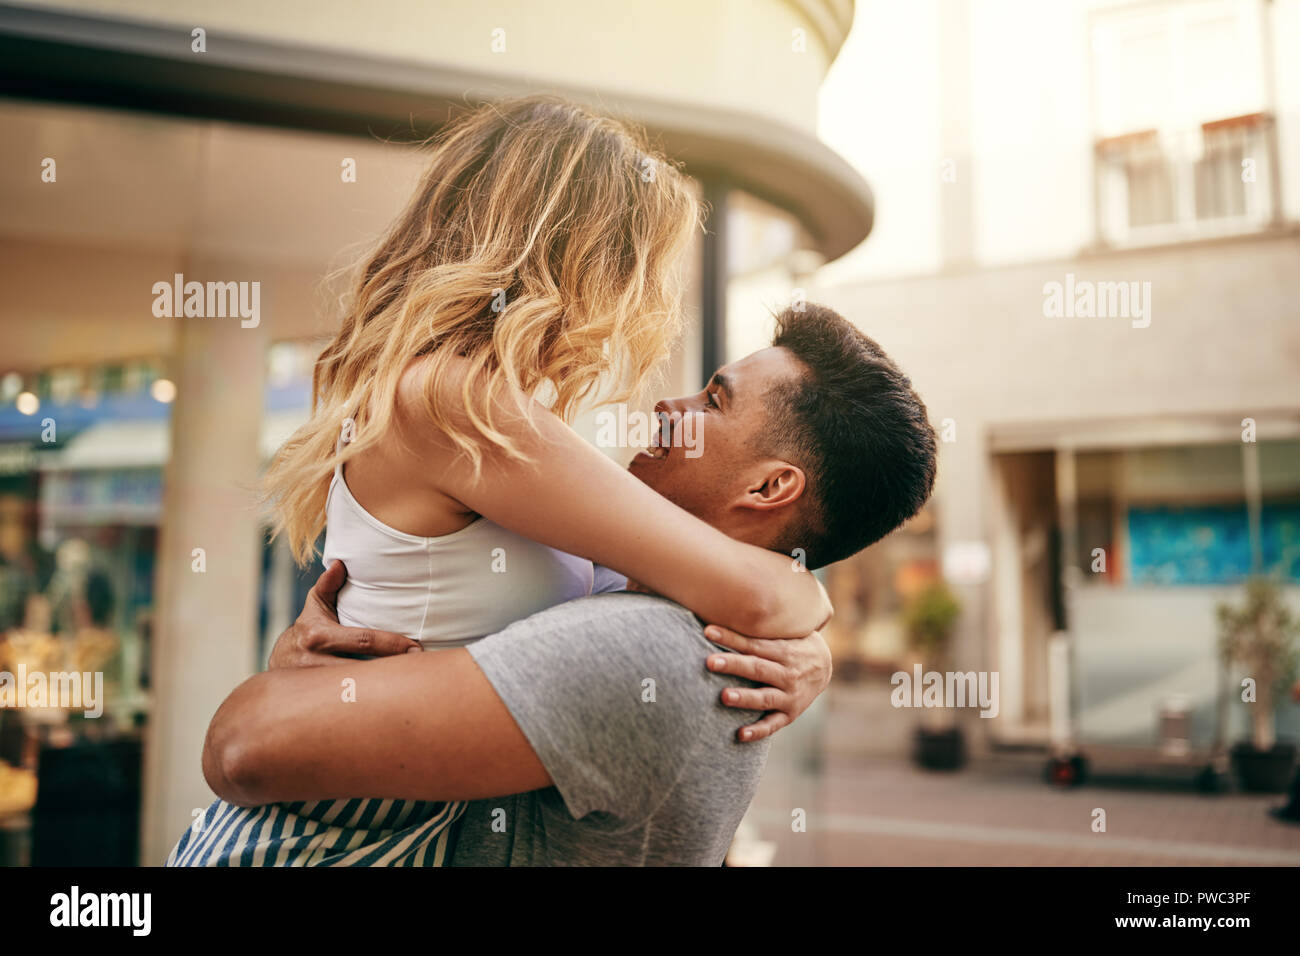 Pareja joven abrazando y mirándose a los ojos mientras se comparte un momento romántico en una calle de la ciudad Foto de stock